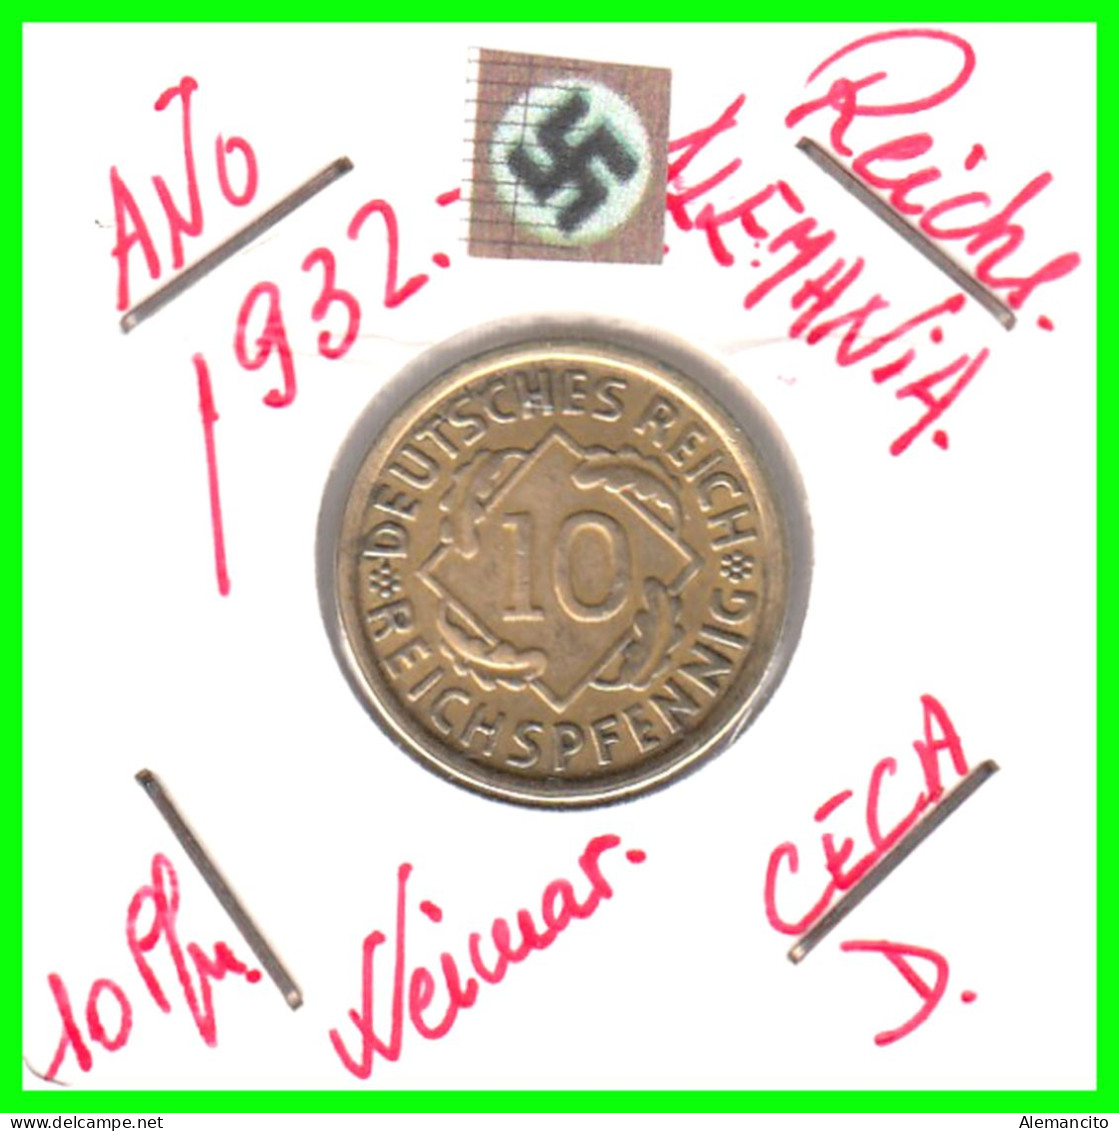 GERMANY REPÚBLICA DE WEIMAR 10 PFENNIG DE PENSIÓN ( 1932 CECA - D ) MONEDA DEL AÑO 1923-1936 (RENTENPFENNIG KM # 32 - 10 Rentenpfennig & 10 Reichspfennig